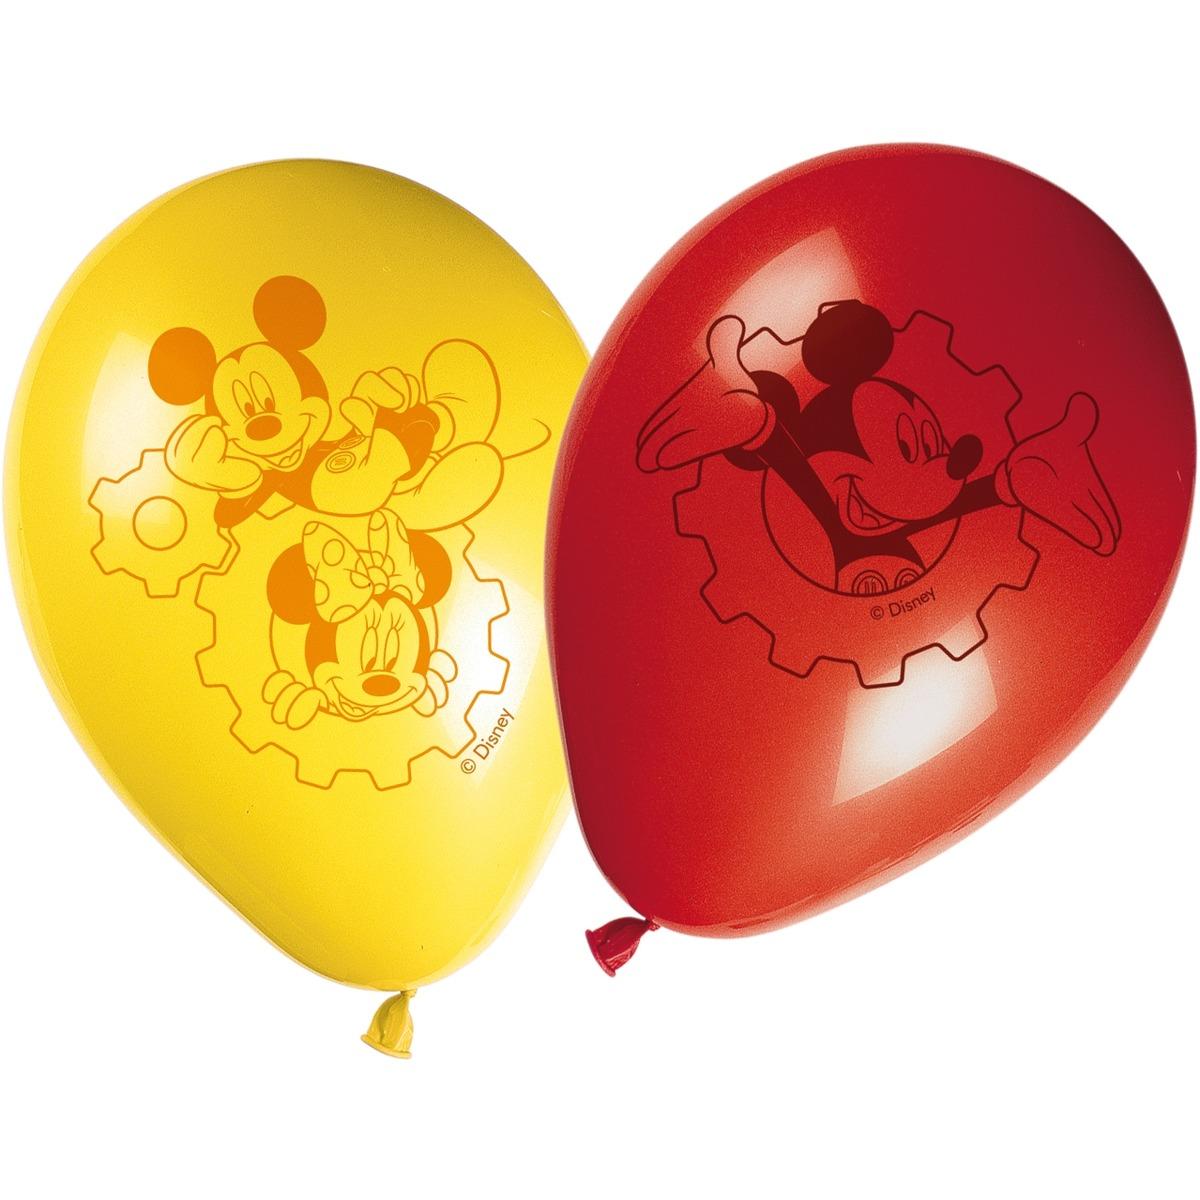 Lot de 8 ballons Mickey playful en papier - 30 cm - Multicolore